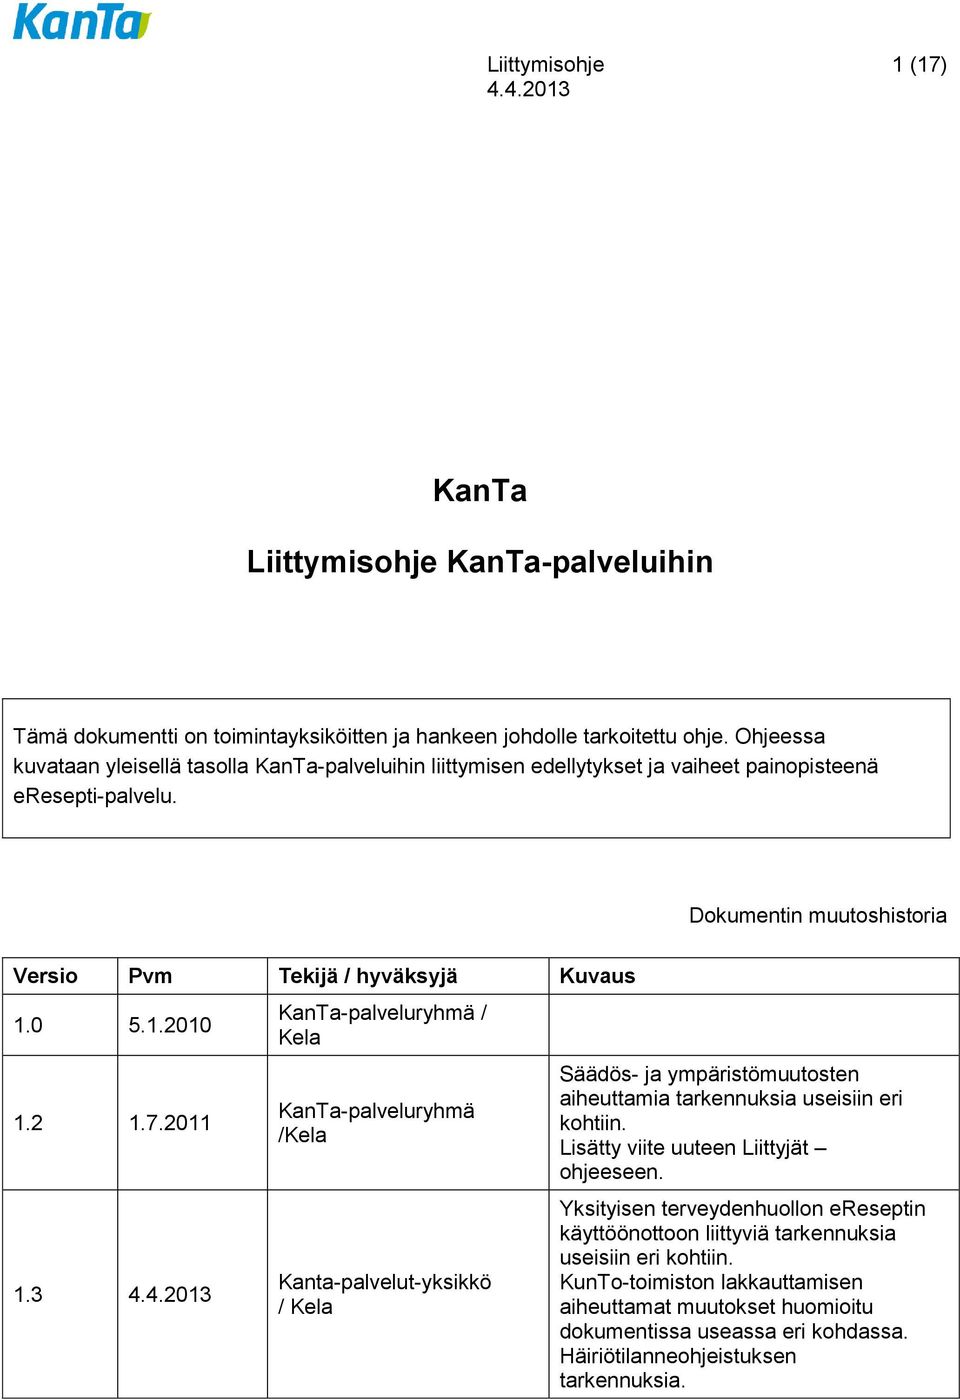 2 1.7.2011 1.3 KanTa-palveluryhmä / Kela KanTa-palveluryhmä /Kela Kanta-palvelut-yksikkö / Kela Säädös- ja ympäristömuutosten aiheuttamia tarkennuksia useisiin eri kohtiin.